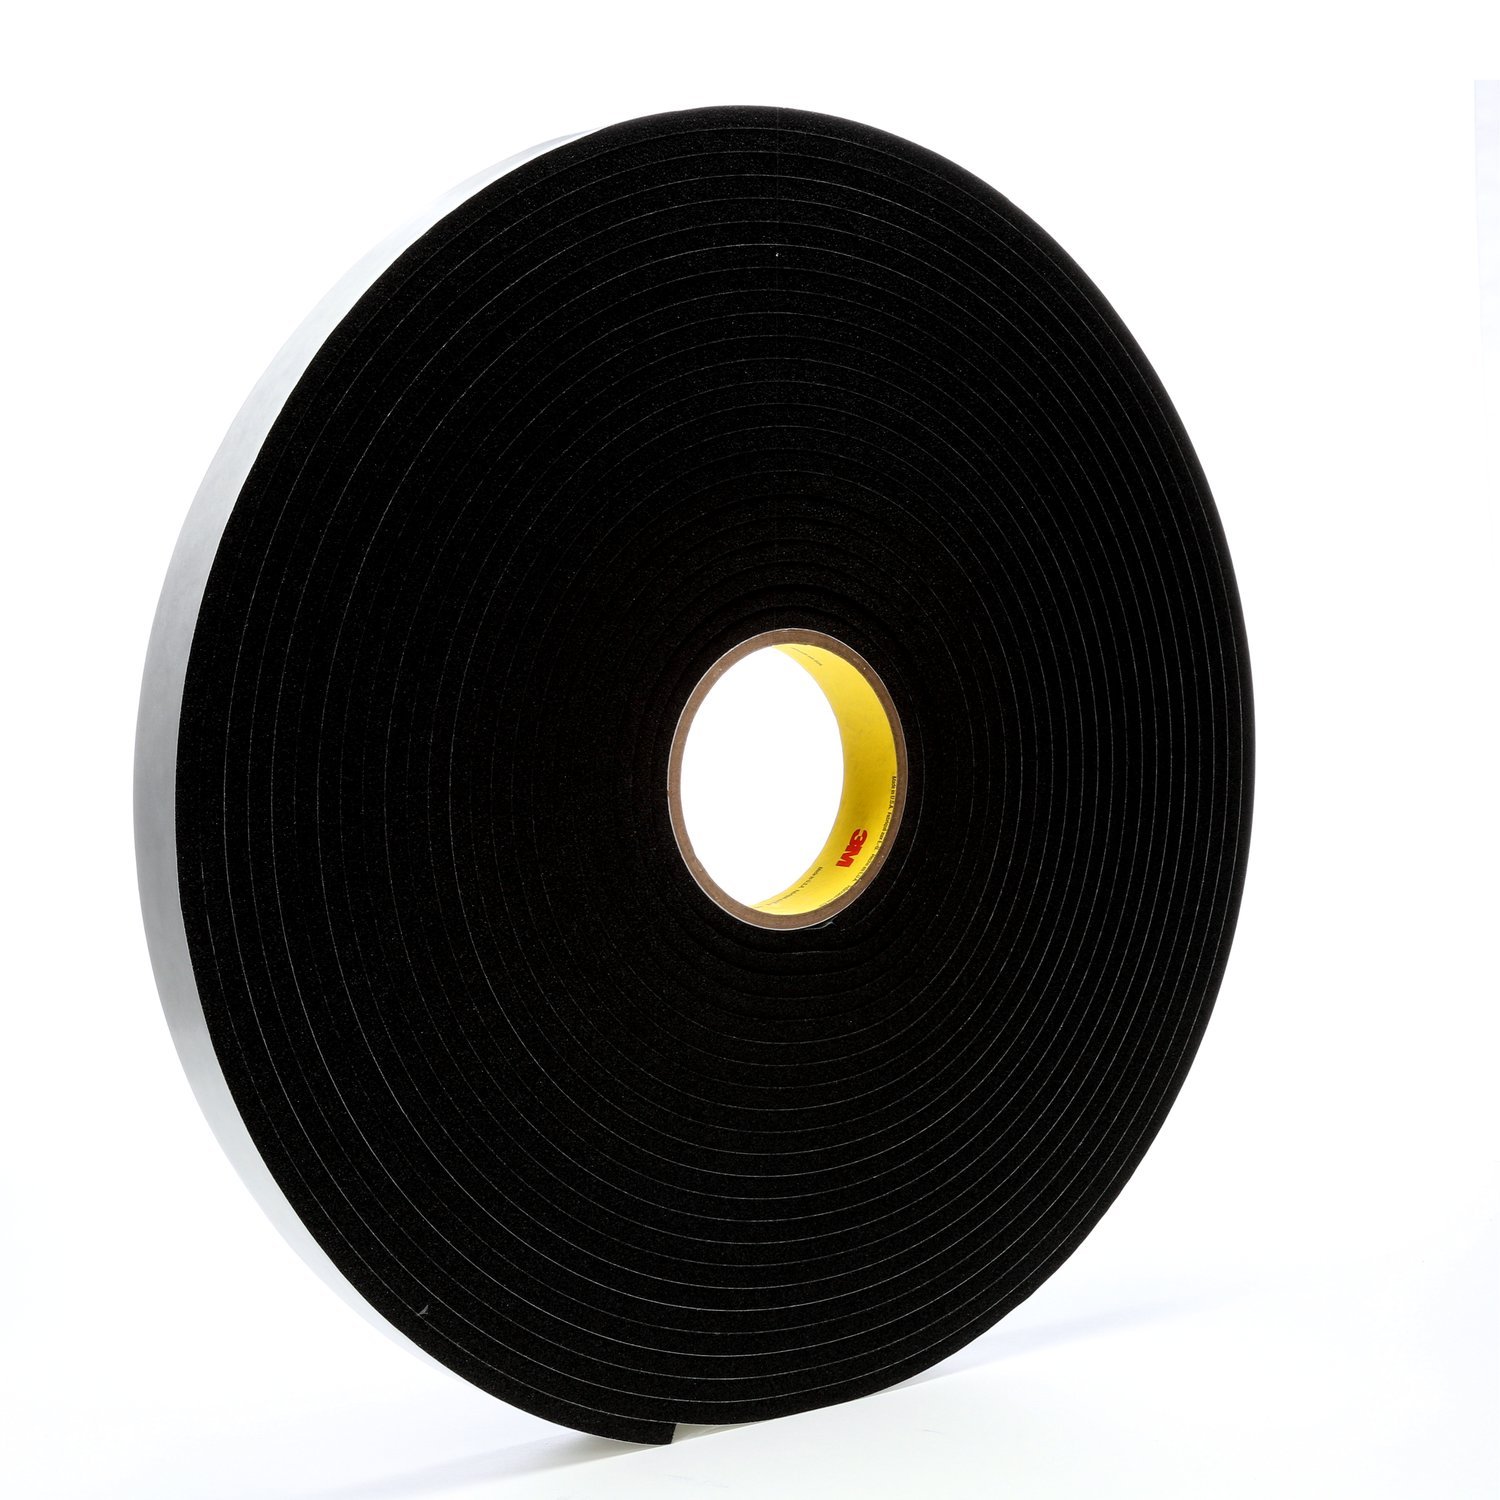 7000047499 - 3M Vinyl Foam Tape 4504, Black, 1 in x 18 yd, 250 mil, 9 rolls per case